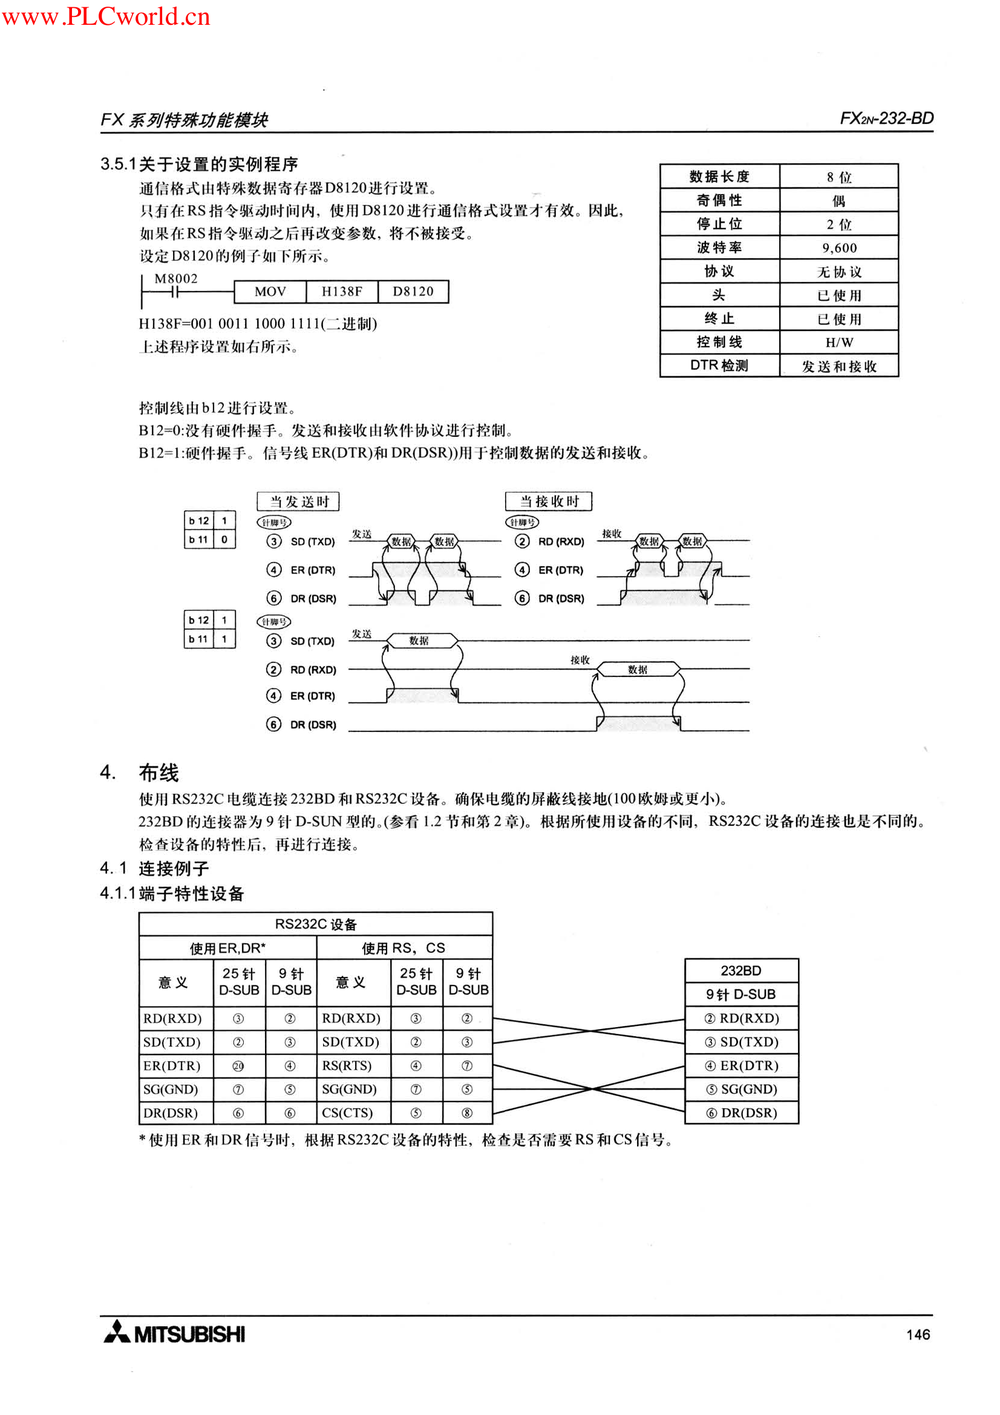 FX2N-232-BD用户指南.pdf-第3页.png